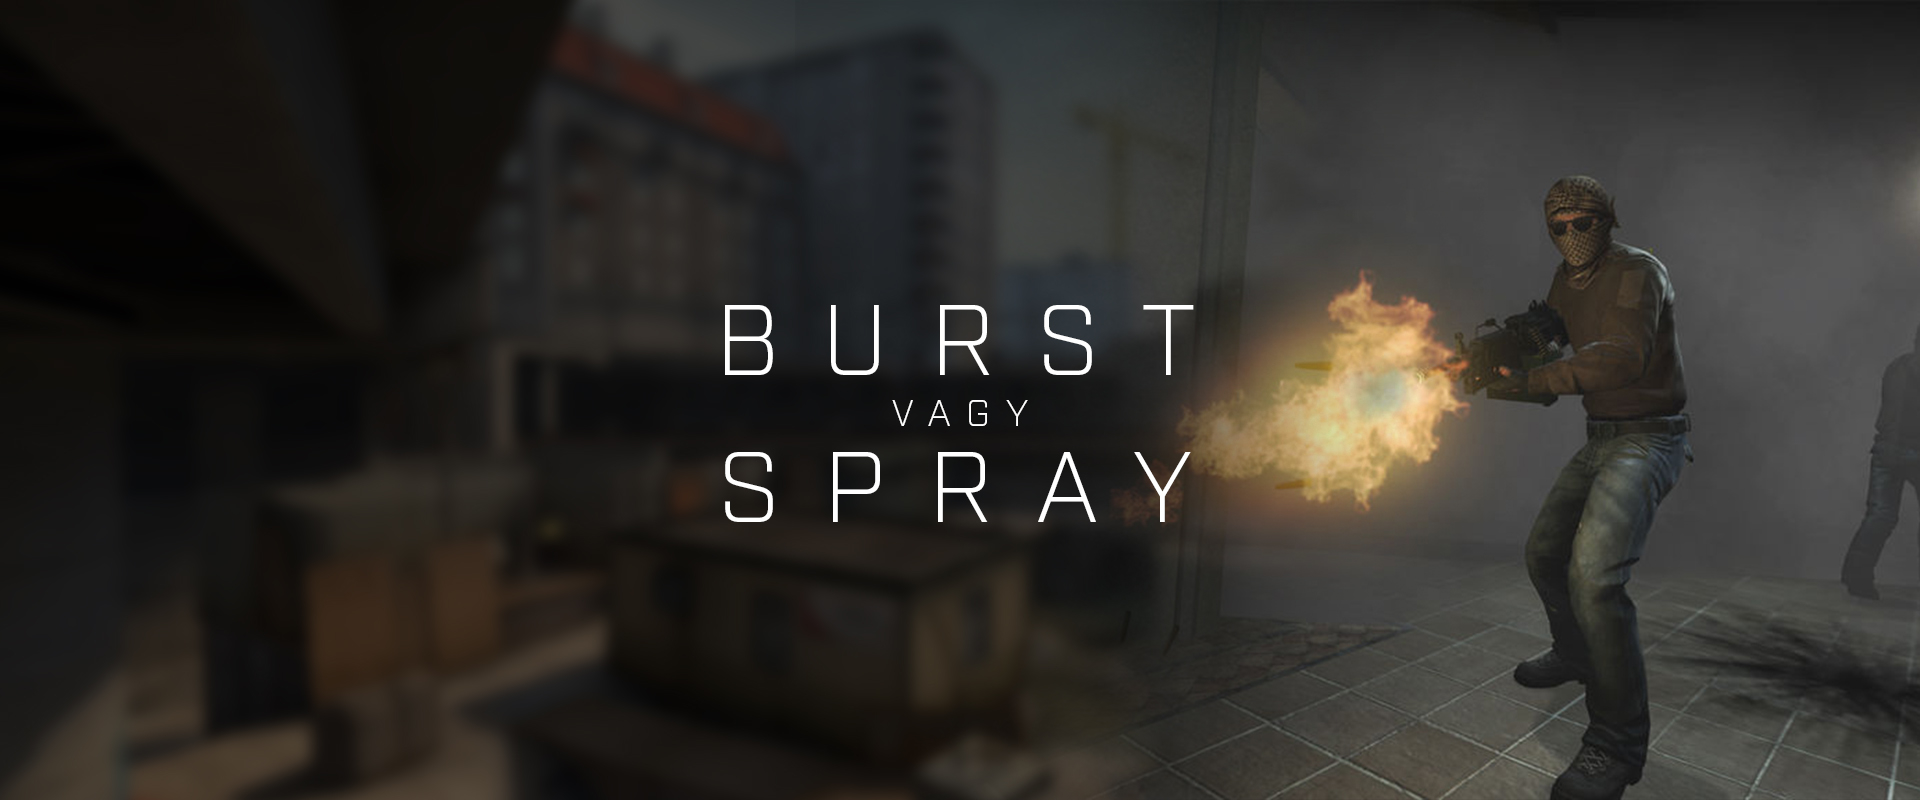 Burst vagy spray?